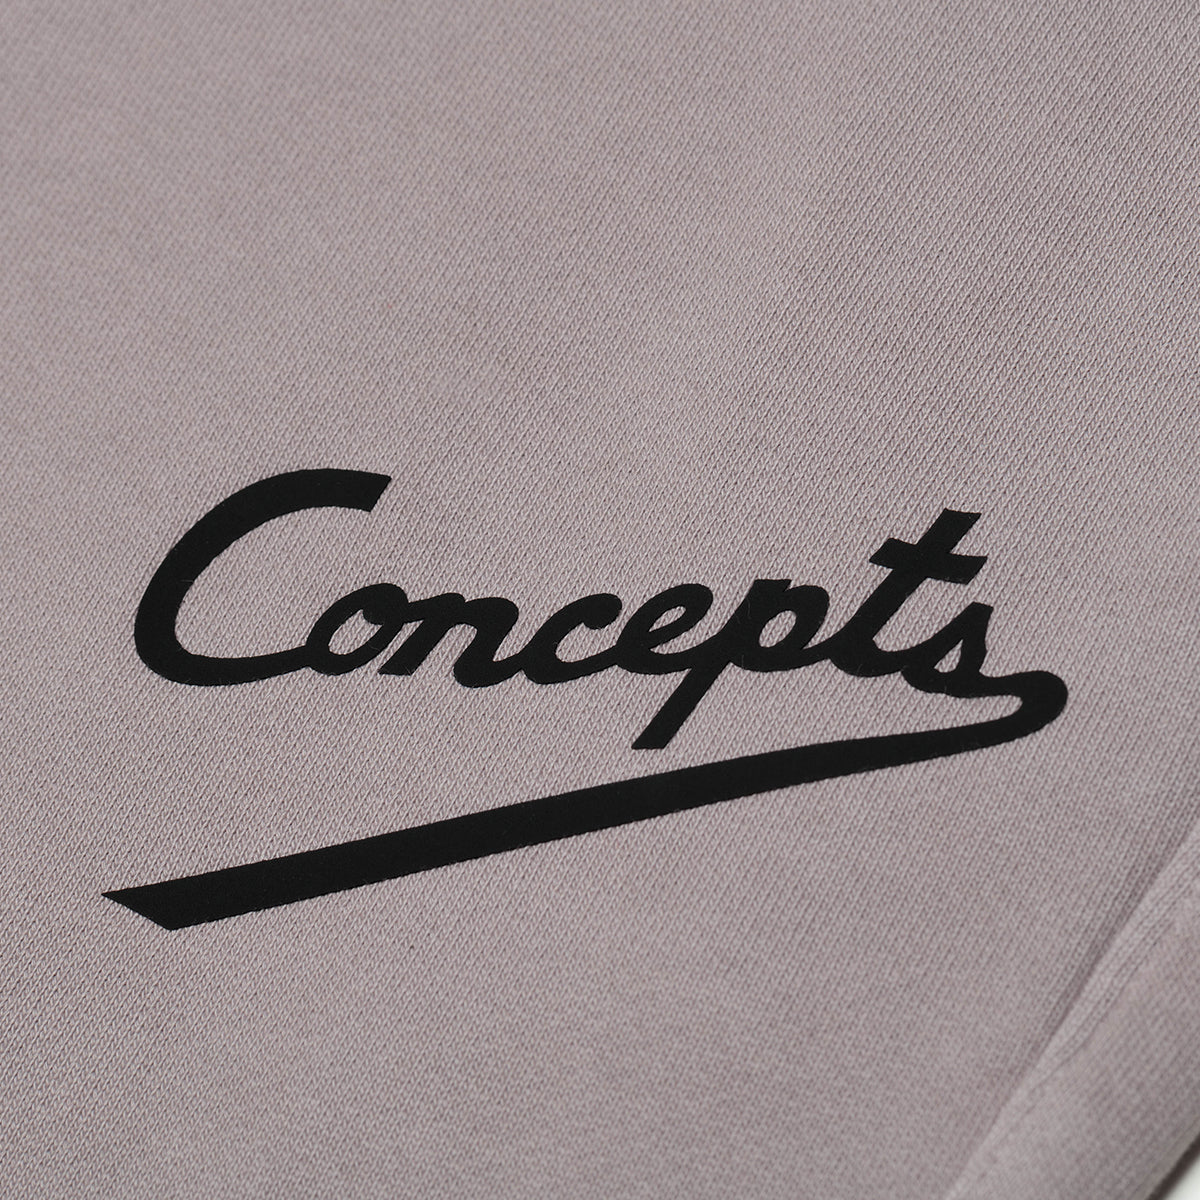 Concepts Le Guide Sweatpants (Grey)